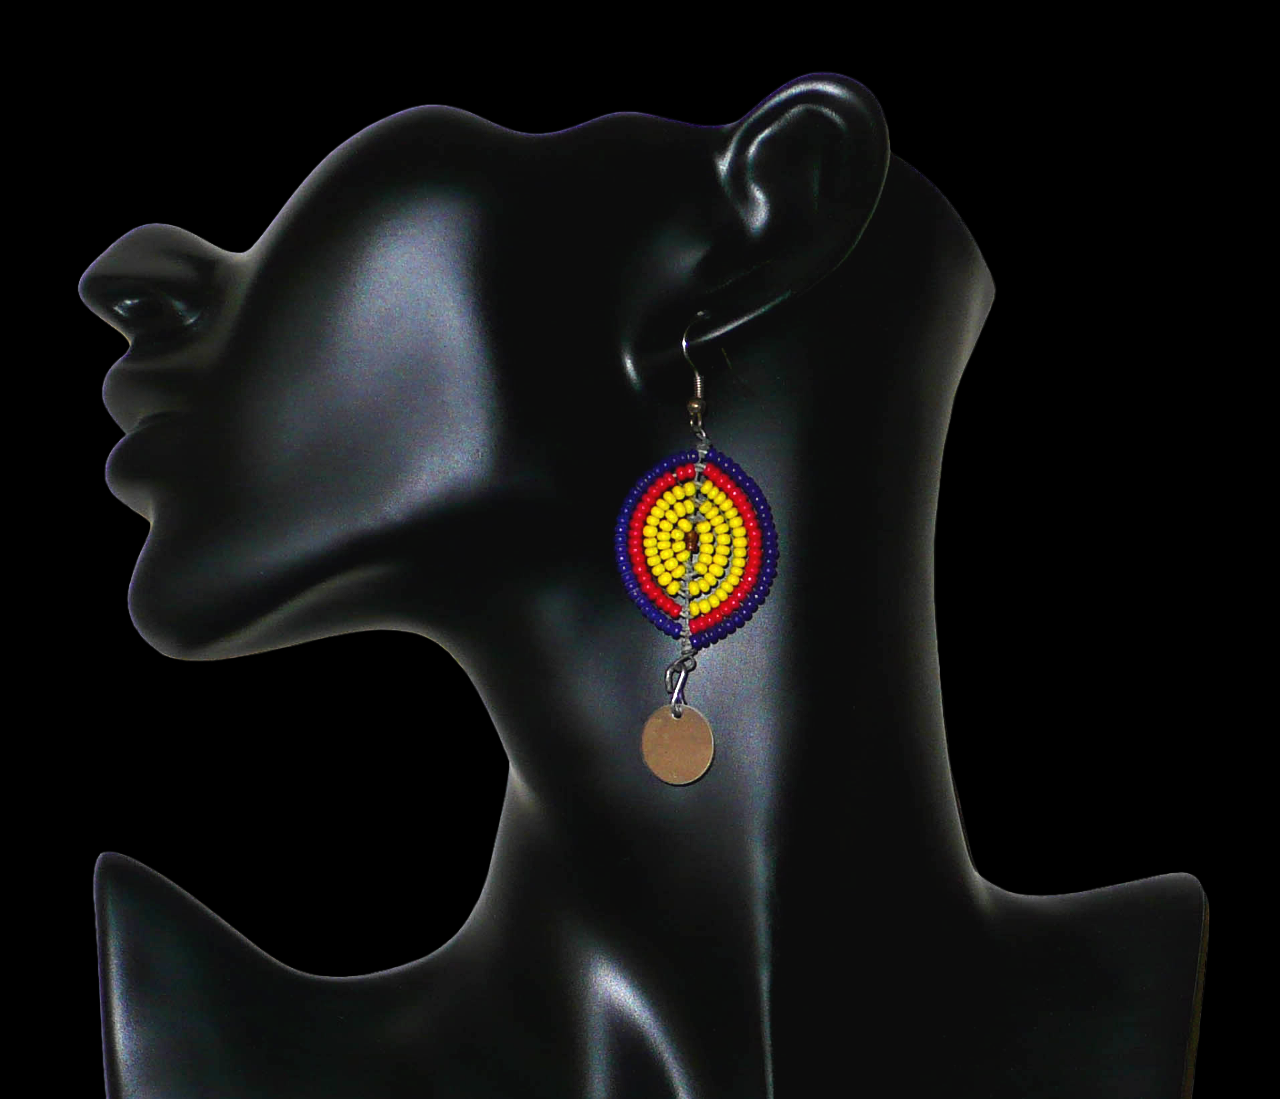 Boucles d'oreilles africaines en forme de boucliers Massai composées de perles de rocaille jaunes, rouges et bleu foncé ; elles se prolongent d'une petite pastille métallique. Ces boucles d'oreilles mesurent 7 cm de long et 2,5 cm de large ; elles se portent sur des oreilles percées. Timeless Fineries